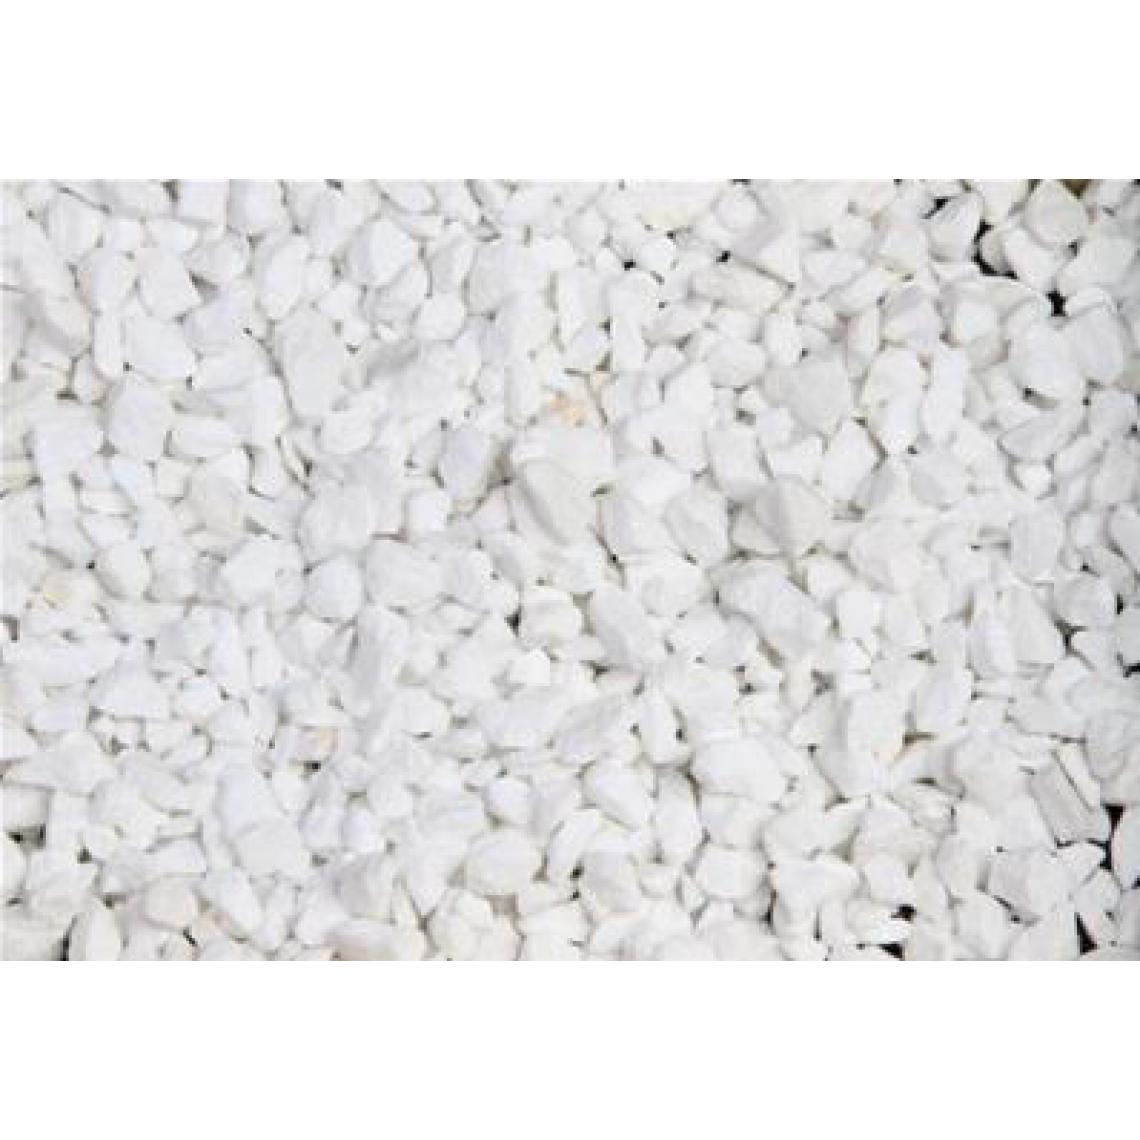 Scmcs - Marbre blanc pur concassé 8/12 400 kg - 16x25kgs - Graviers et galets